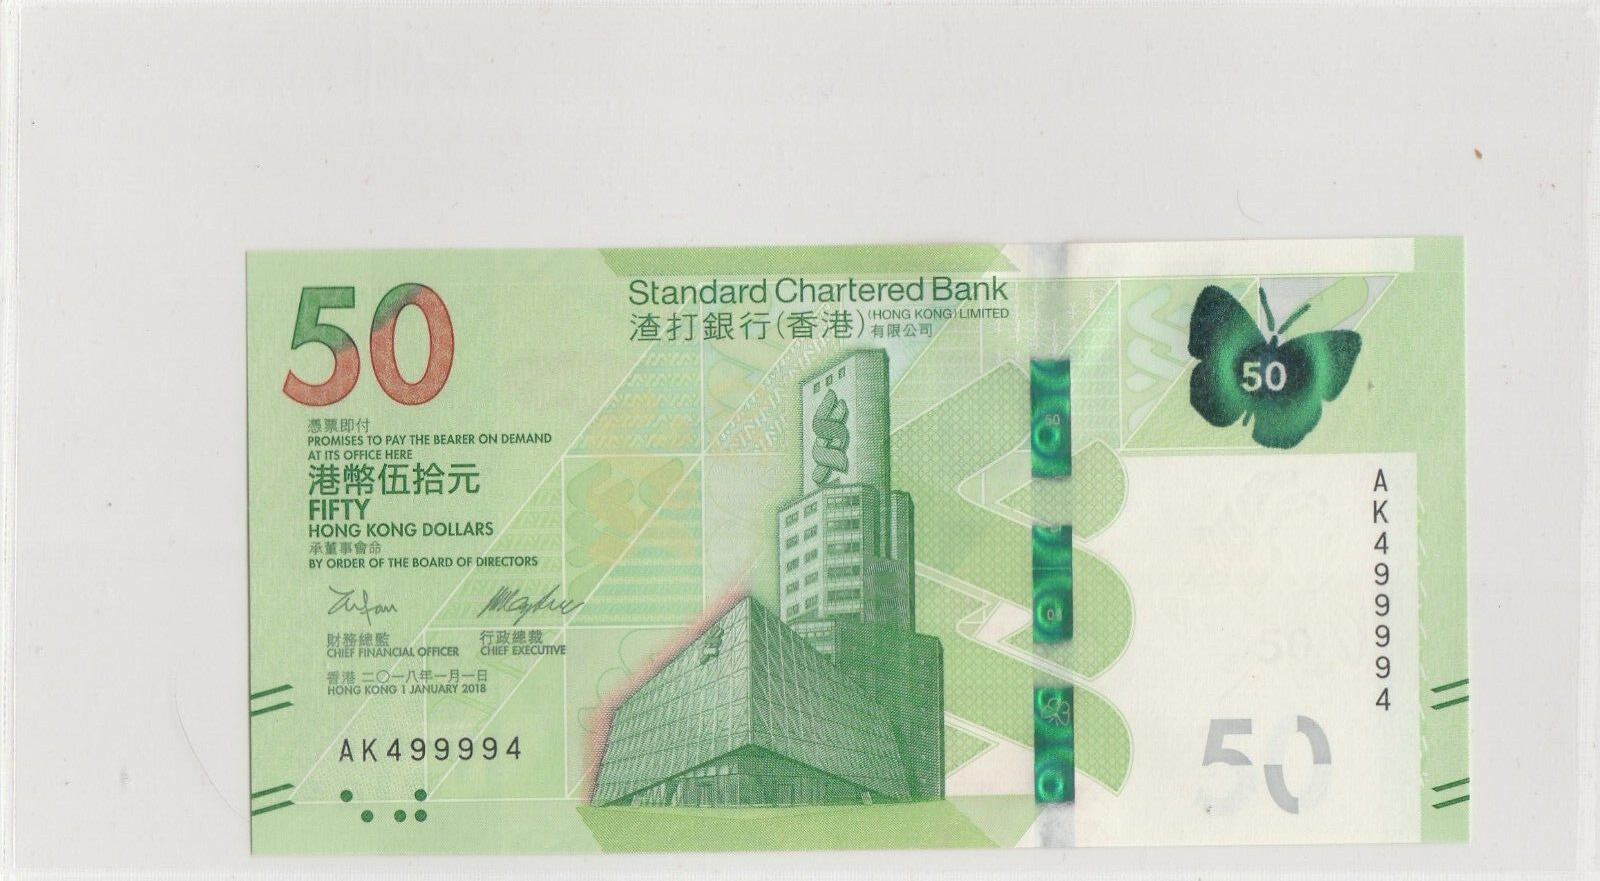 2018  Hong Kong Standard Chartered Bank  $50 Radar no AK 499994 Gem-Uncirculated